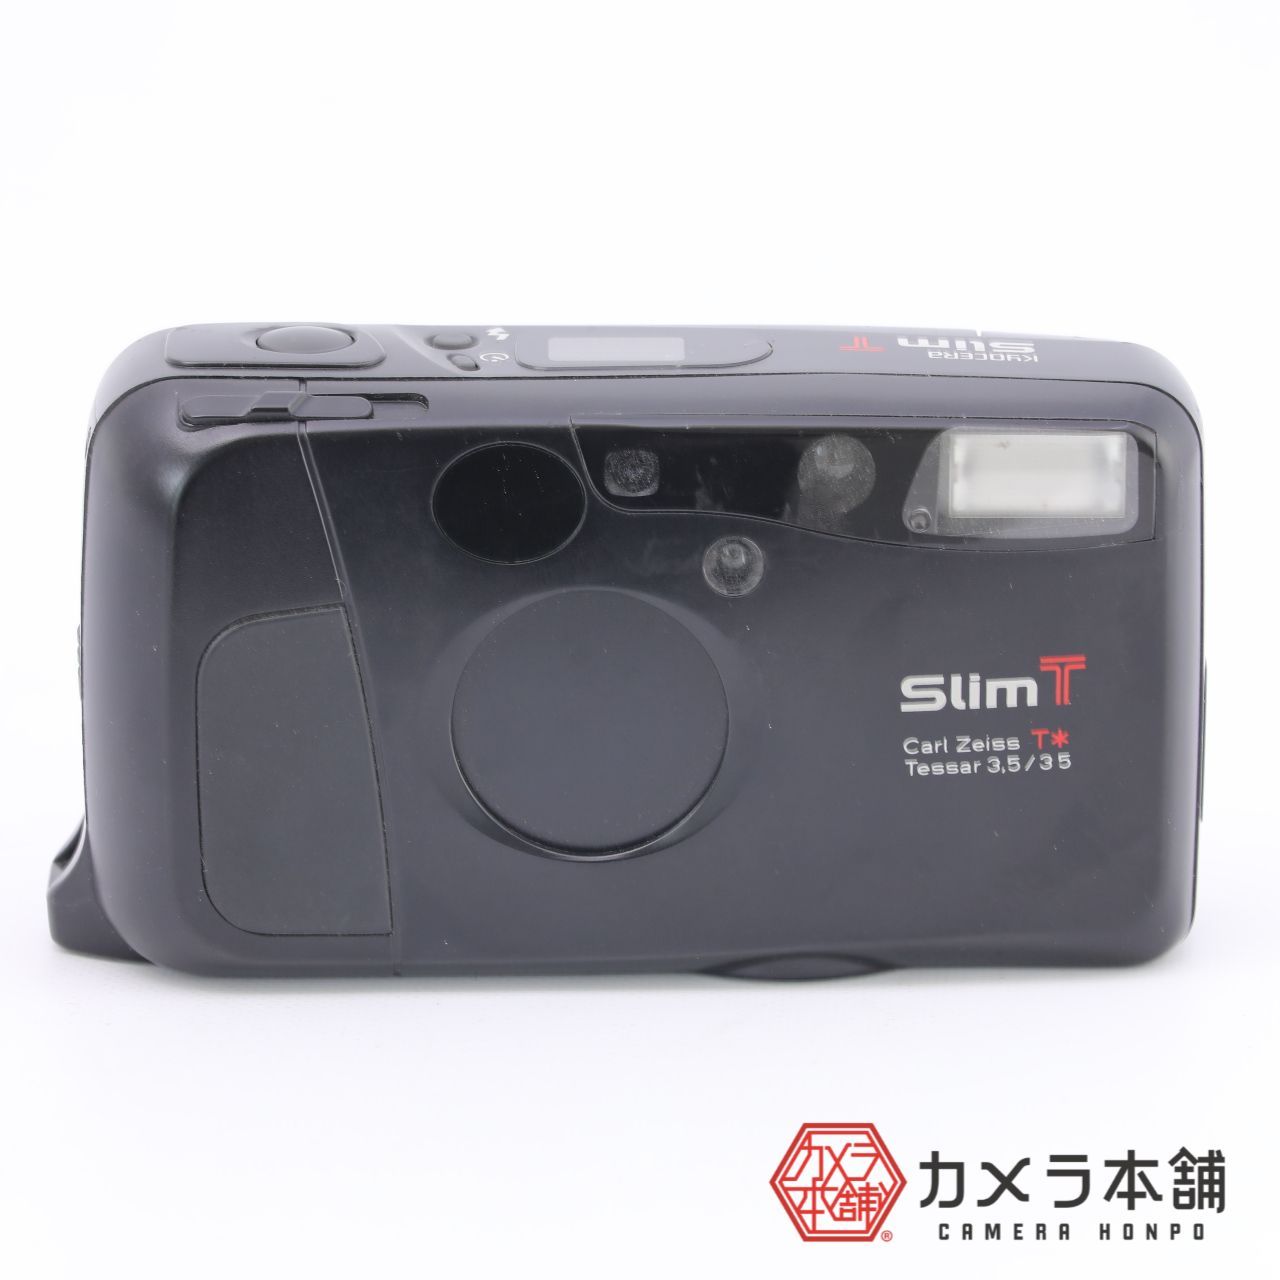 Kyocera 京セラ Slim T フィルムカメラ コンパクト - フィルムカメラ